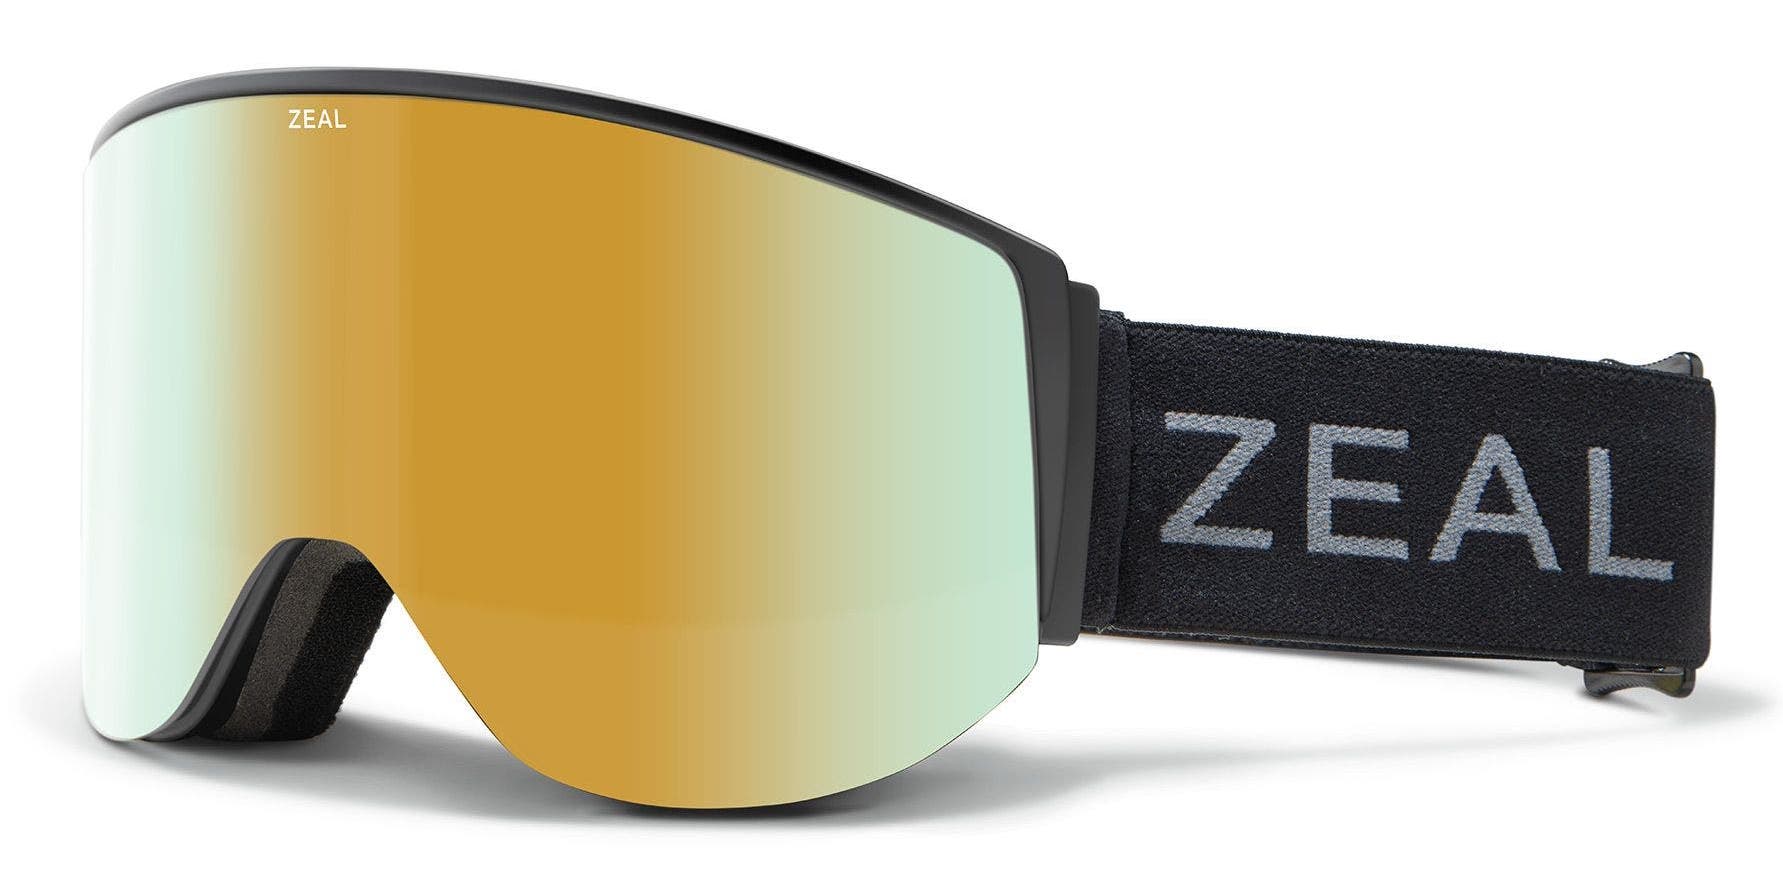 Top 3 Best Zeal Optics Snow Goggles of 2021–2022